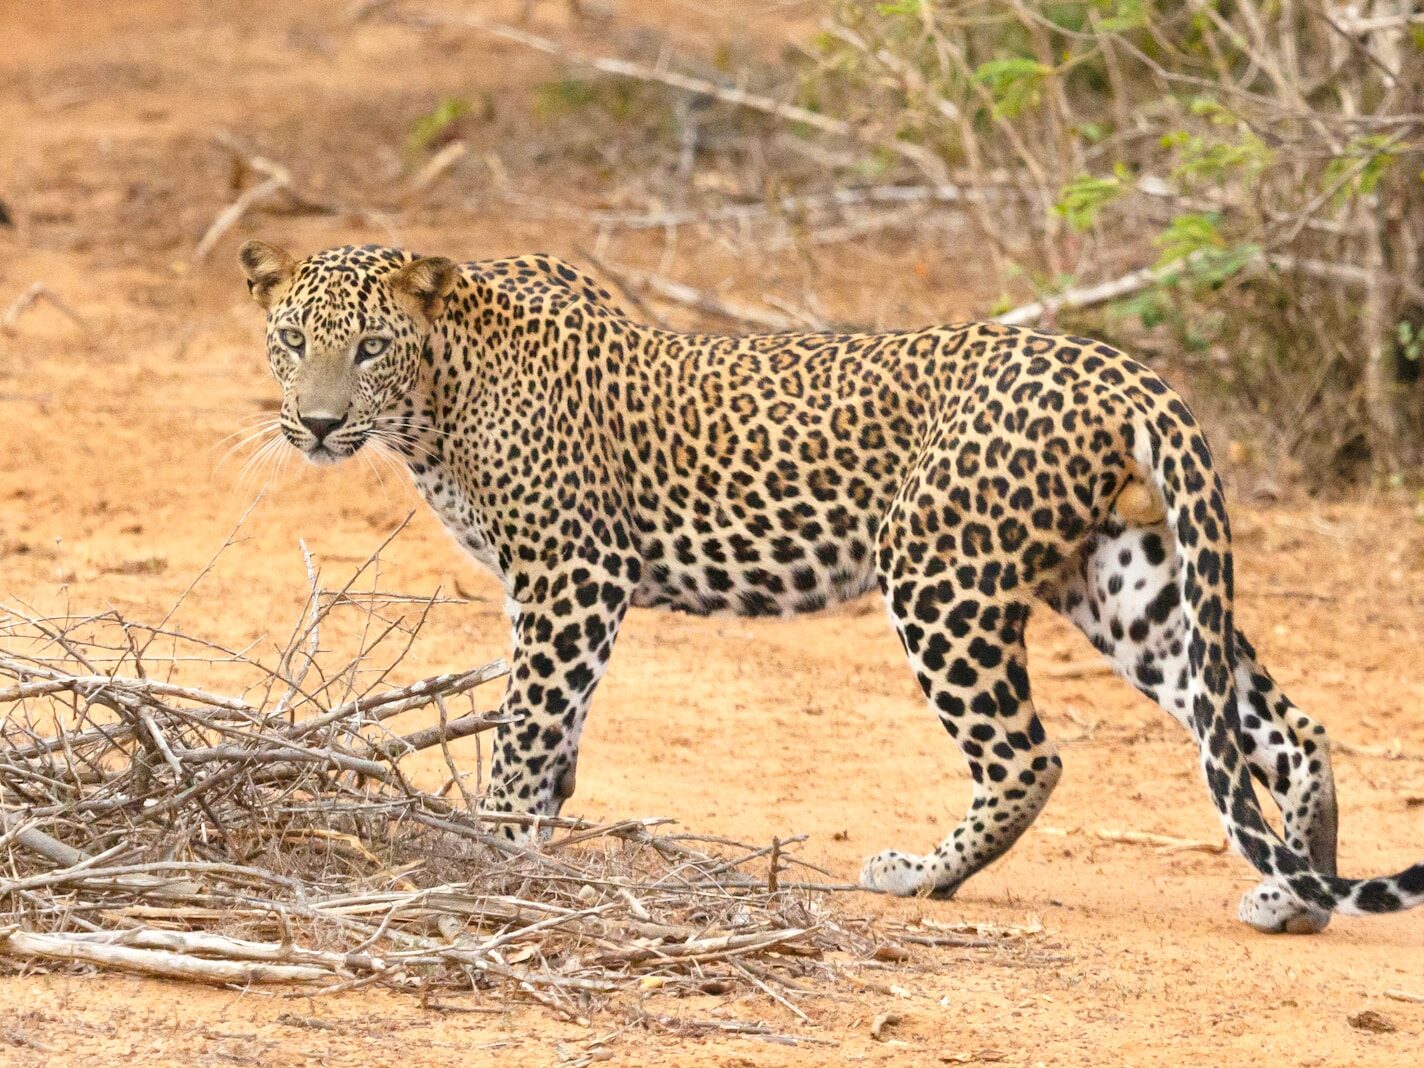 a large leopard walking across a dirt field